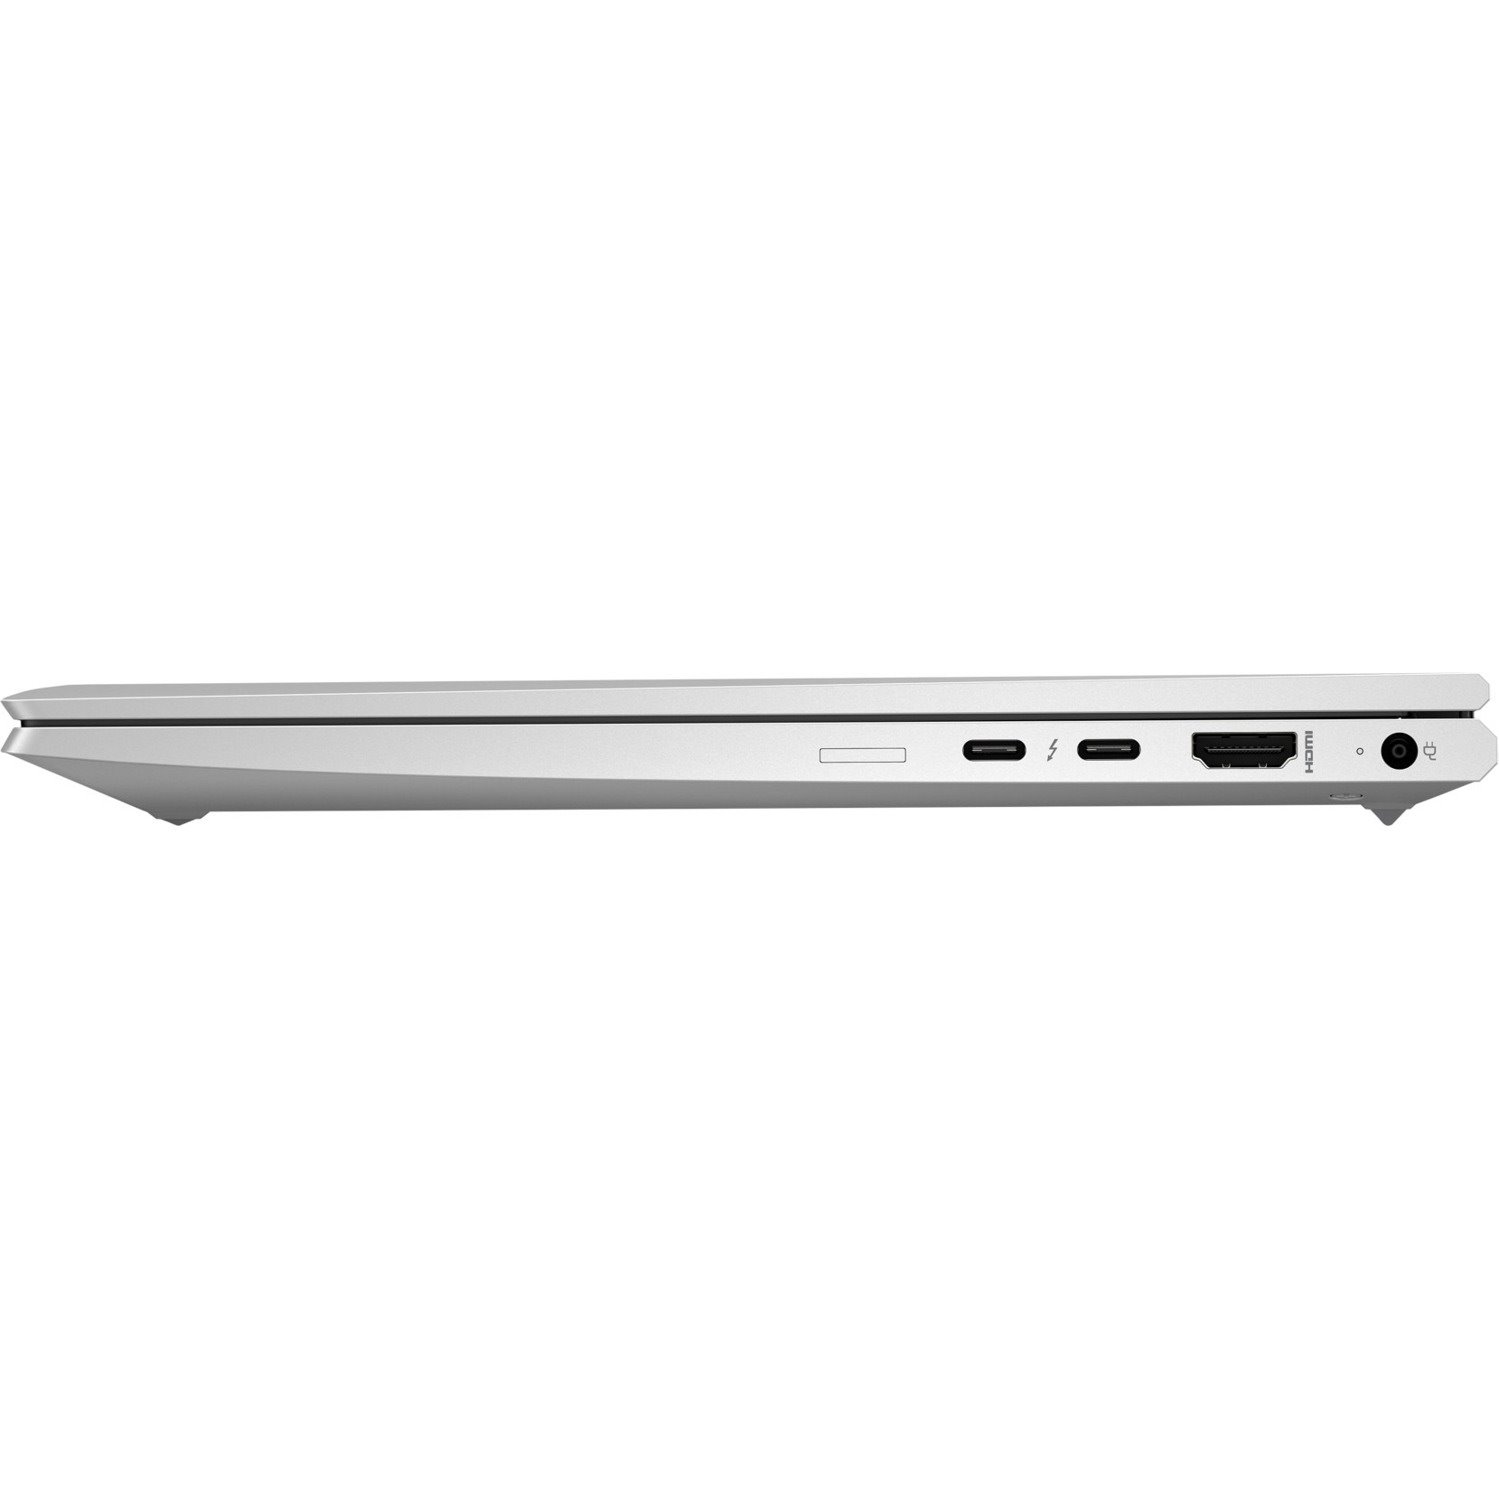 HP EliteBook 830 G8 13.3" Notebook - Full HD - Intel Core i5 11th Gen i5-1145G7 - 8 GB - 256 GB SSD